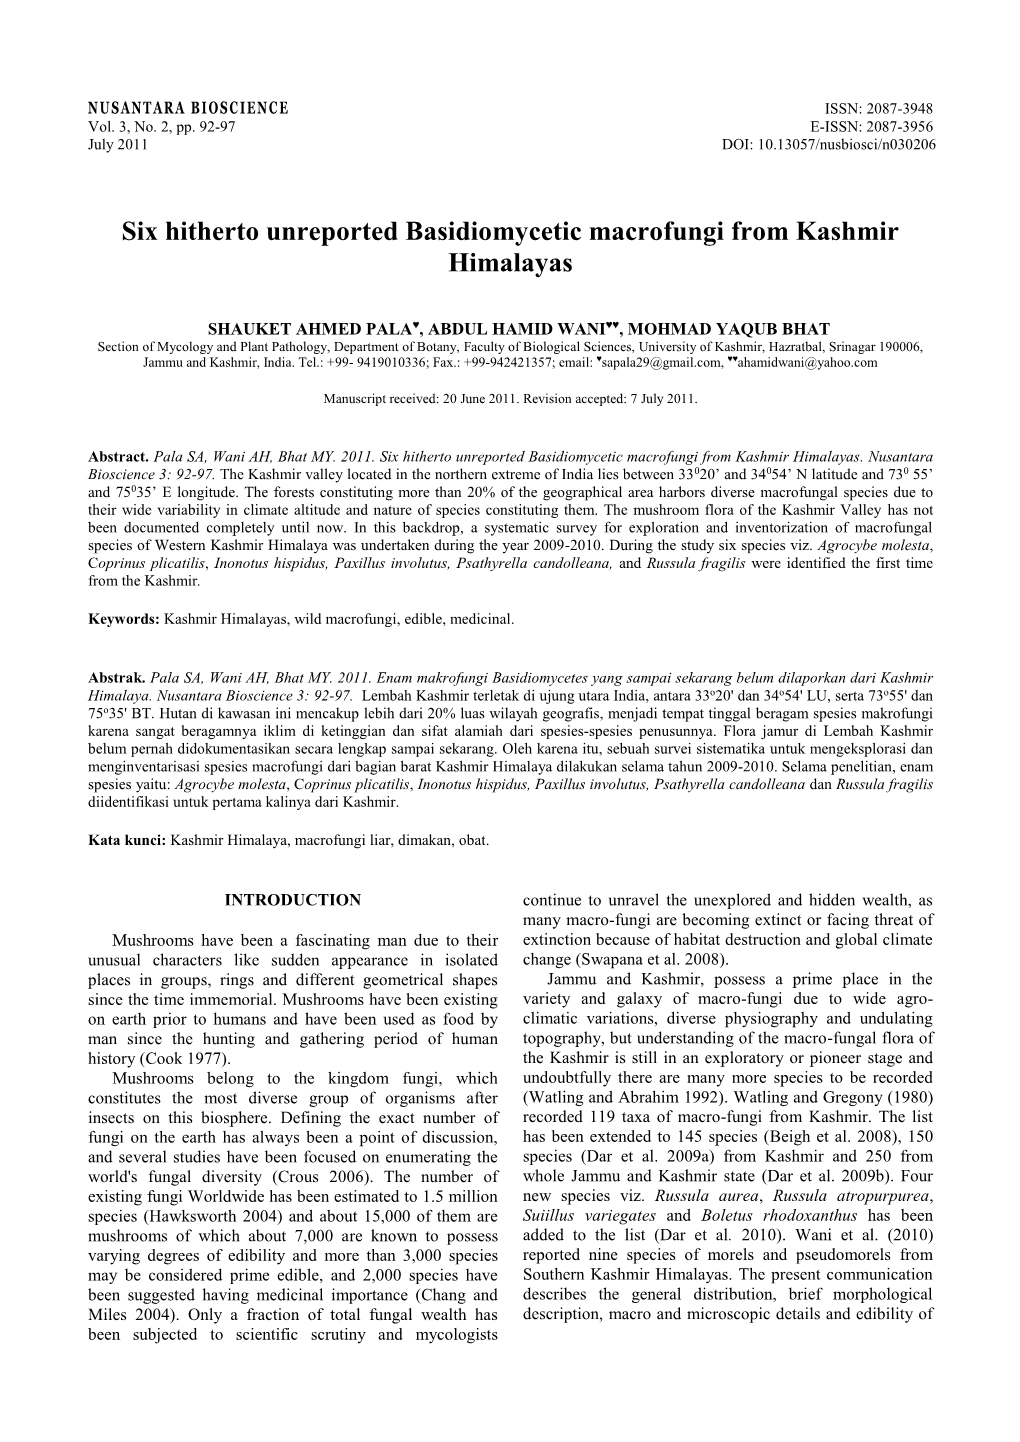 Six Hitherto Unreported Basidiomycetic Macrofungi from Kashmir Himalayas